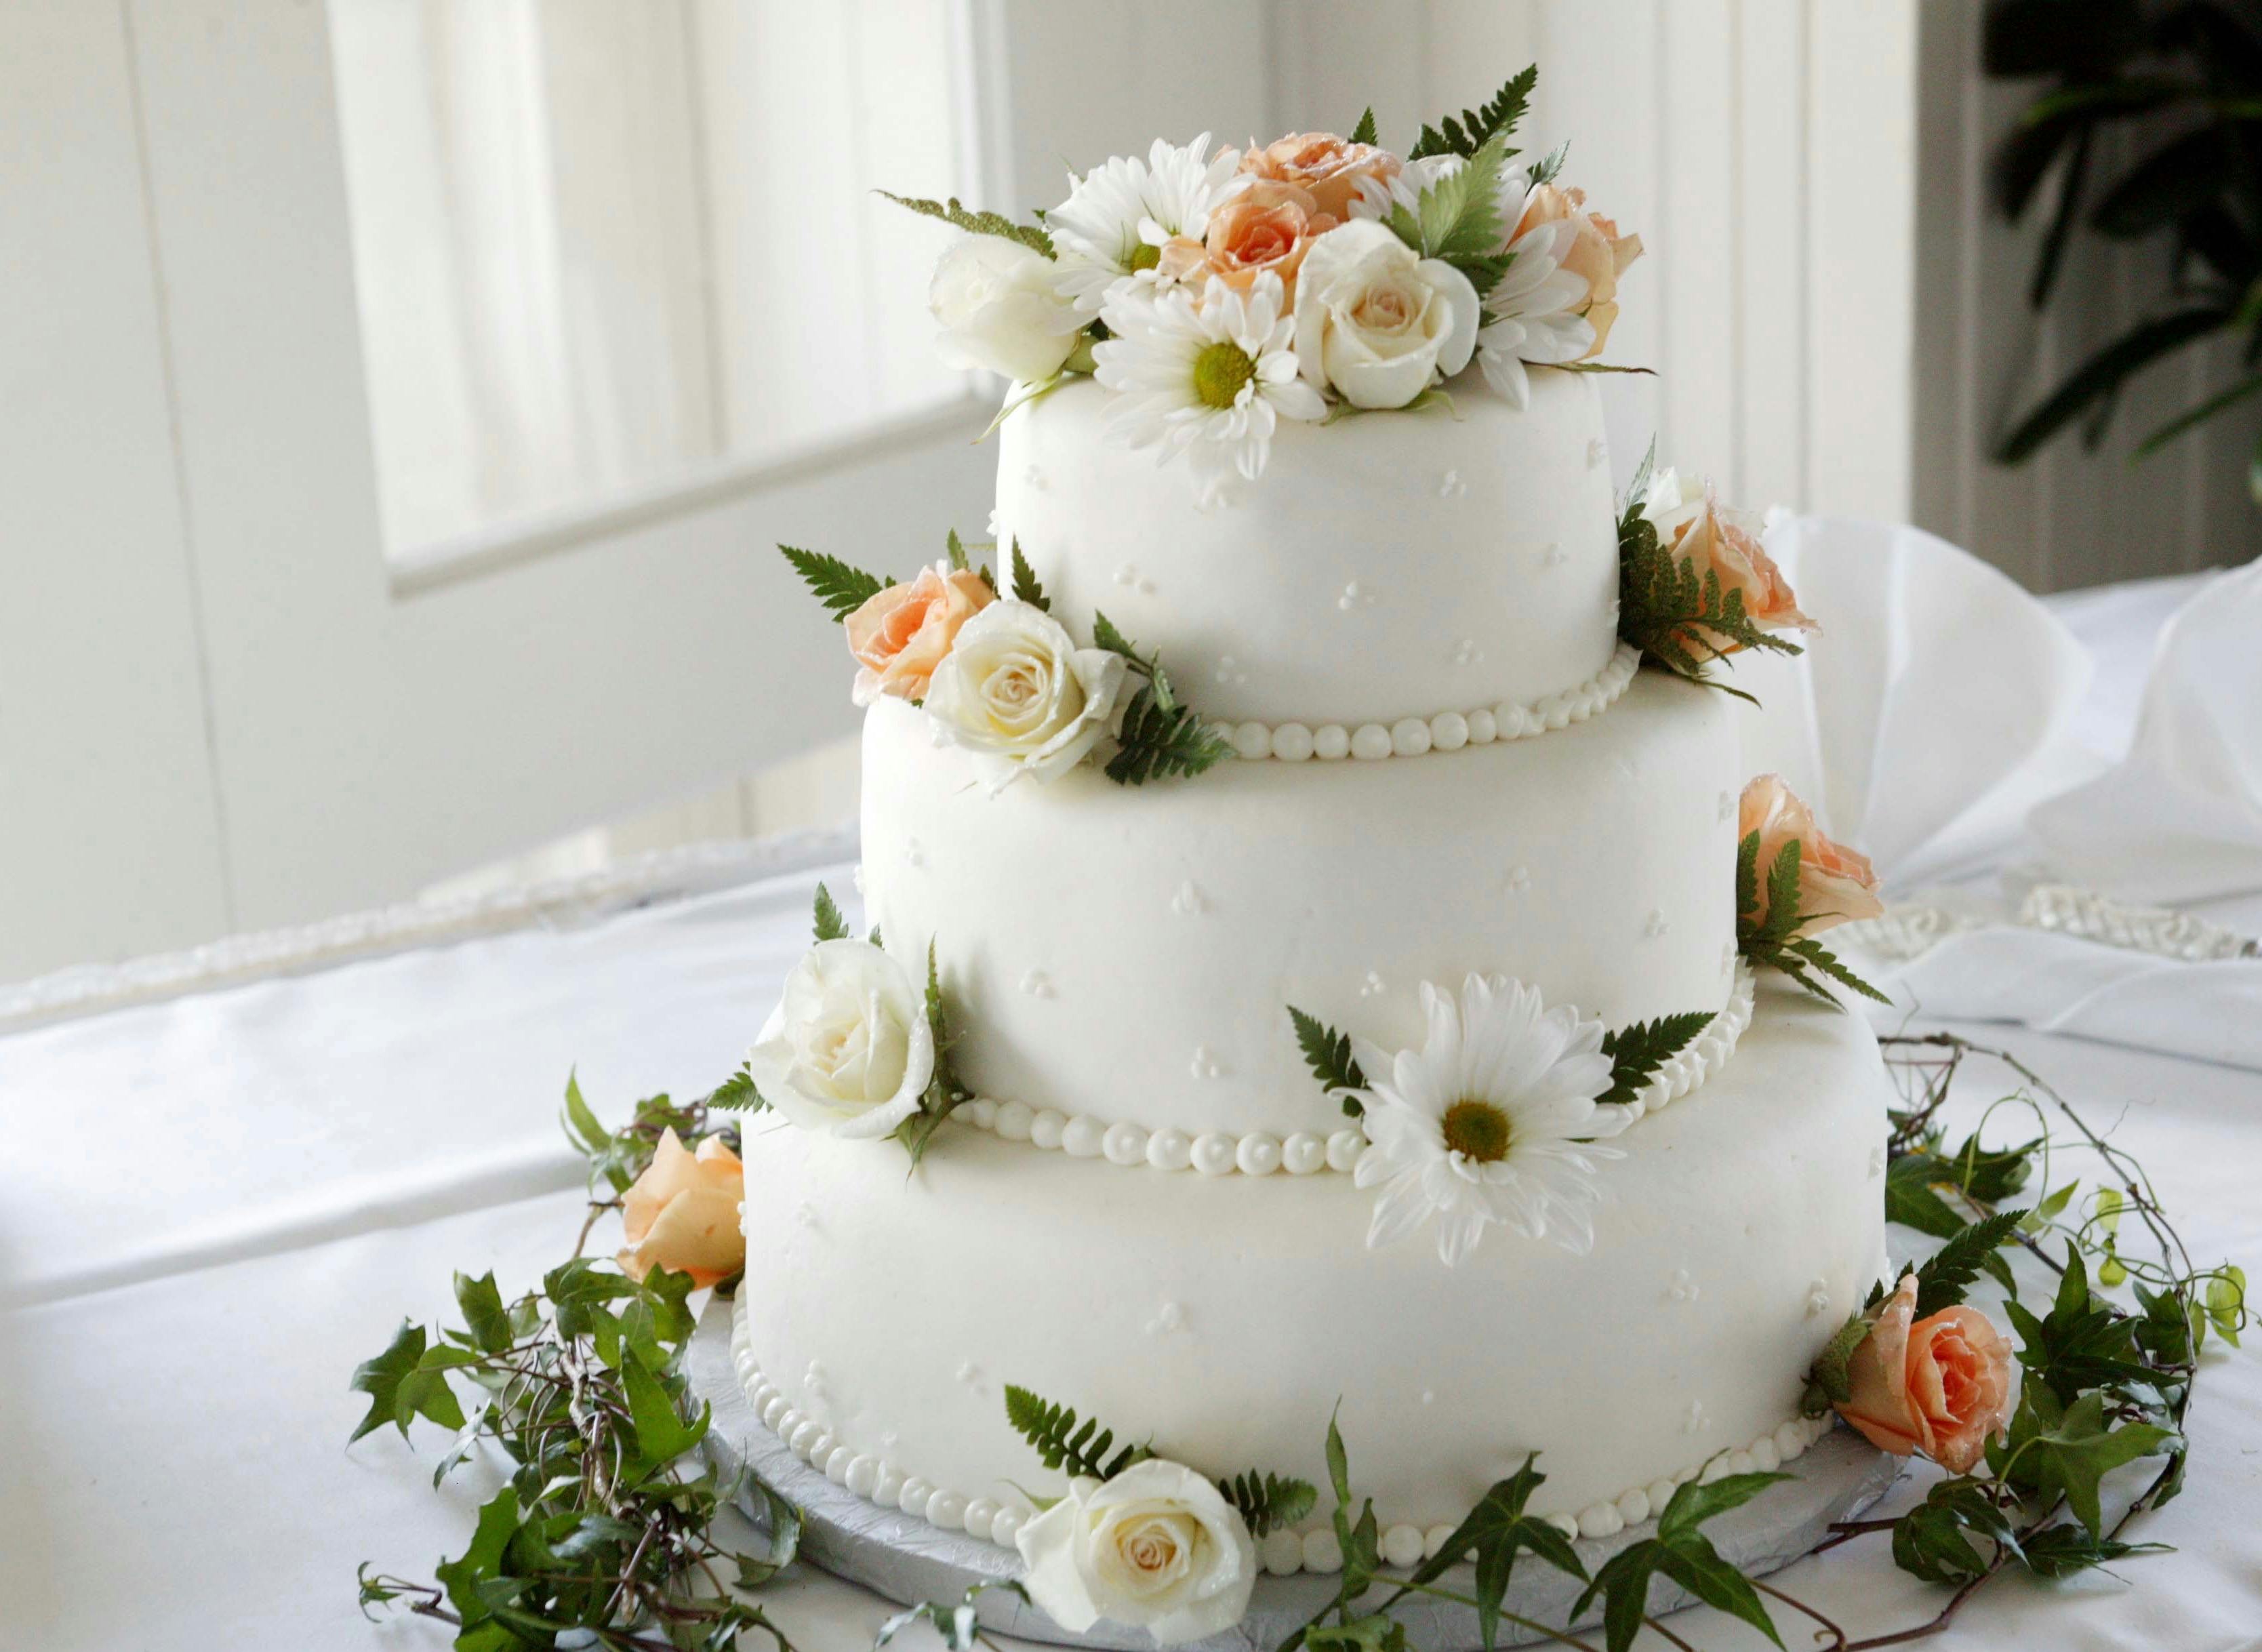 Happy Anniversary Cake Images WhatsApp Status, Wedding Anniversary Wishes,  Greetings, Cake Images| - YouTube